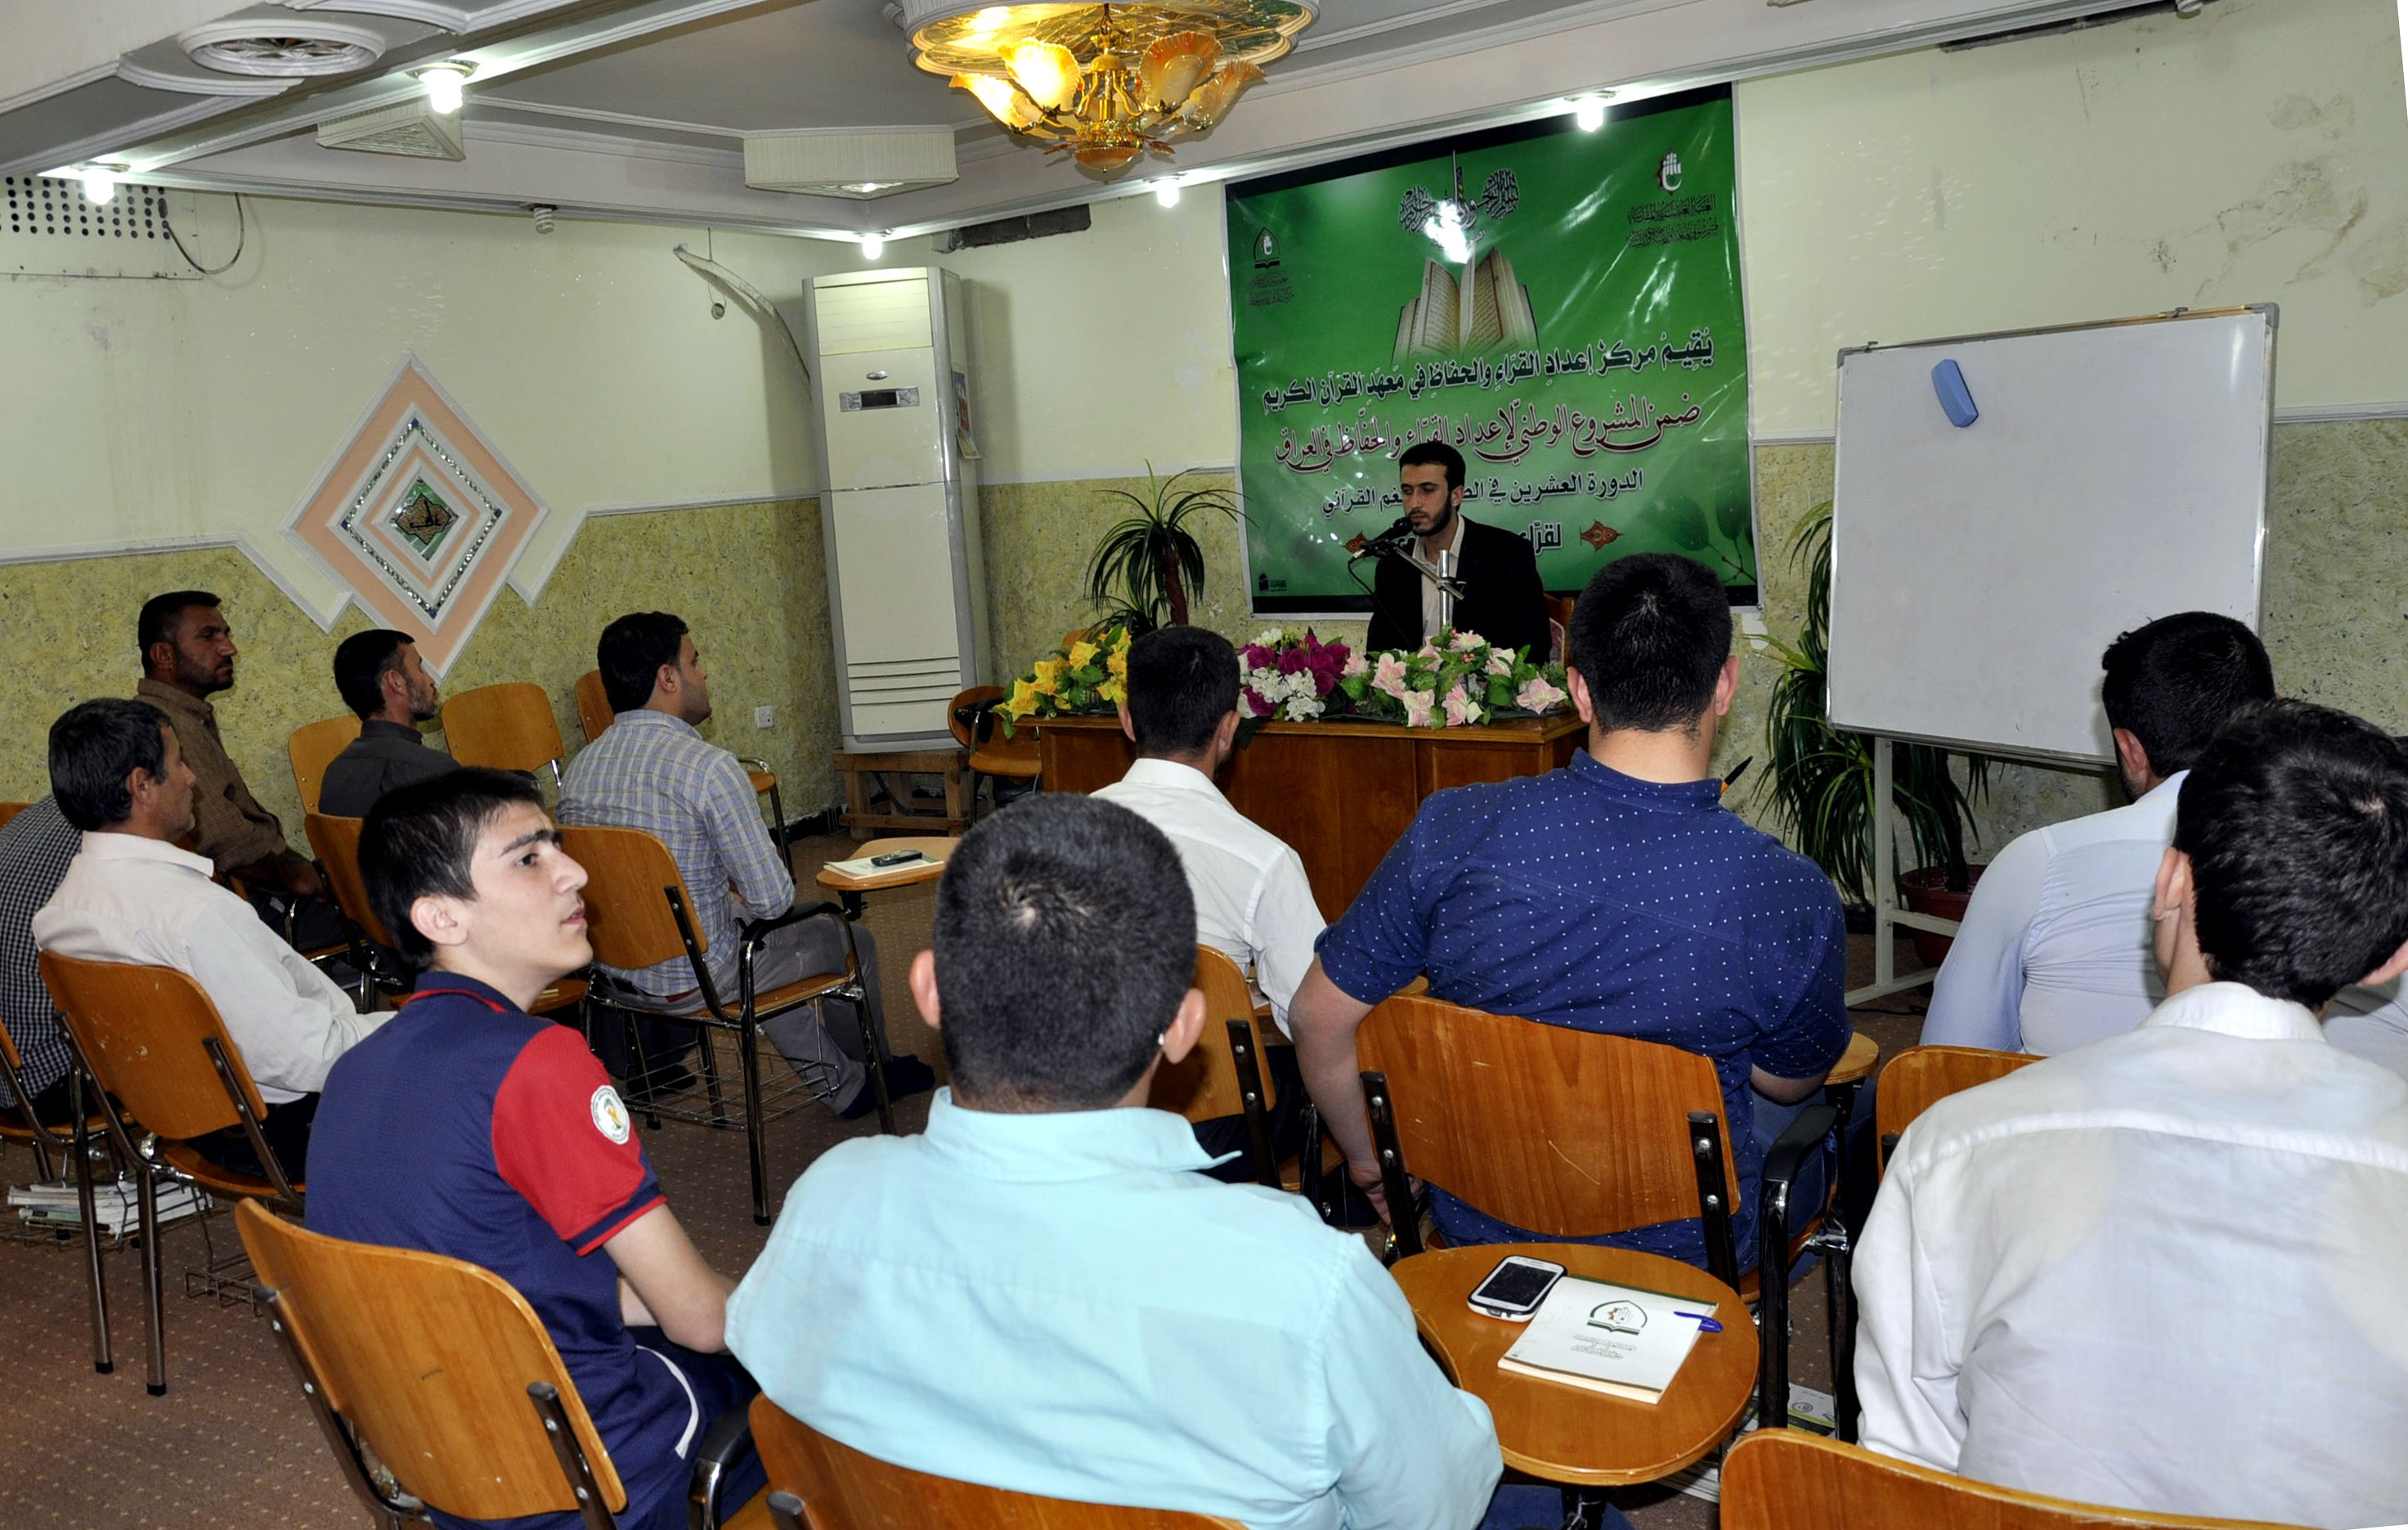 معهد القرآن الكريم يقيم دورة تخصصية في الصوت والنغم القرآني لقرّاء محافظة نينوى